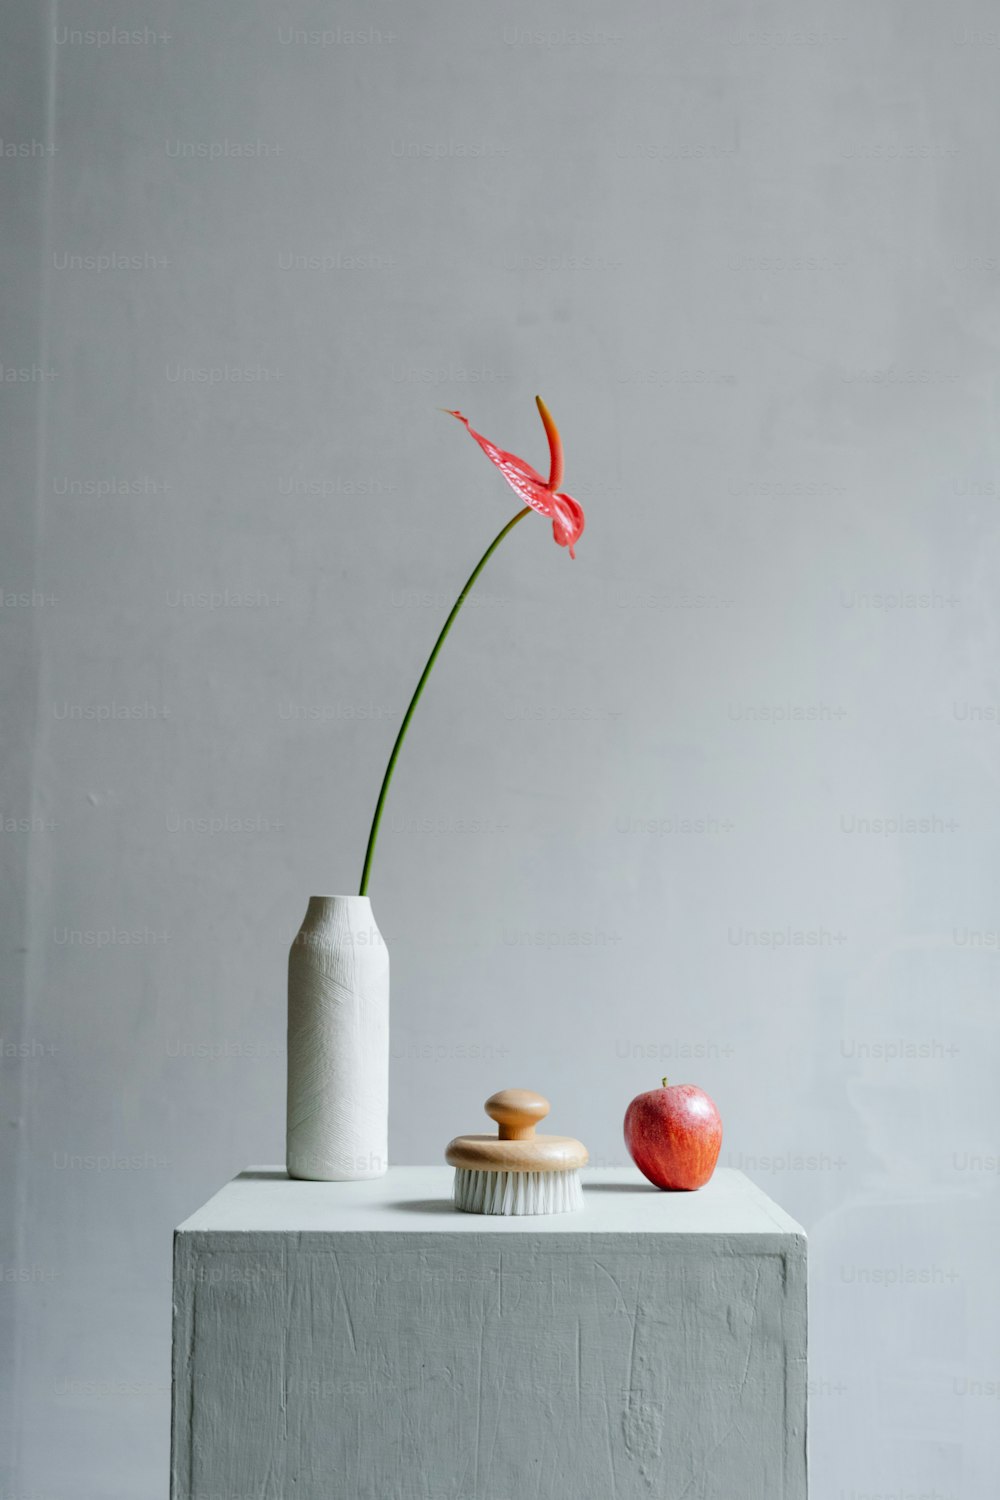 um vaso com uma flor ao lado de uma maçã